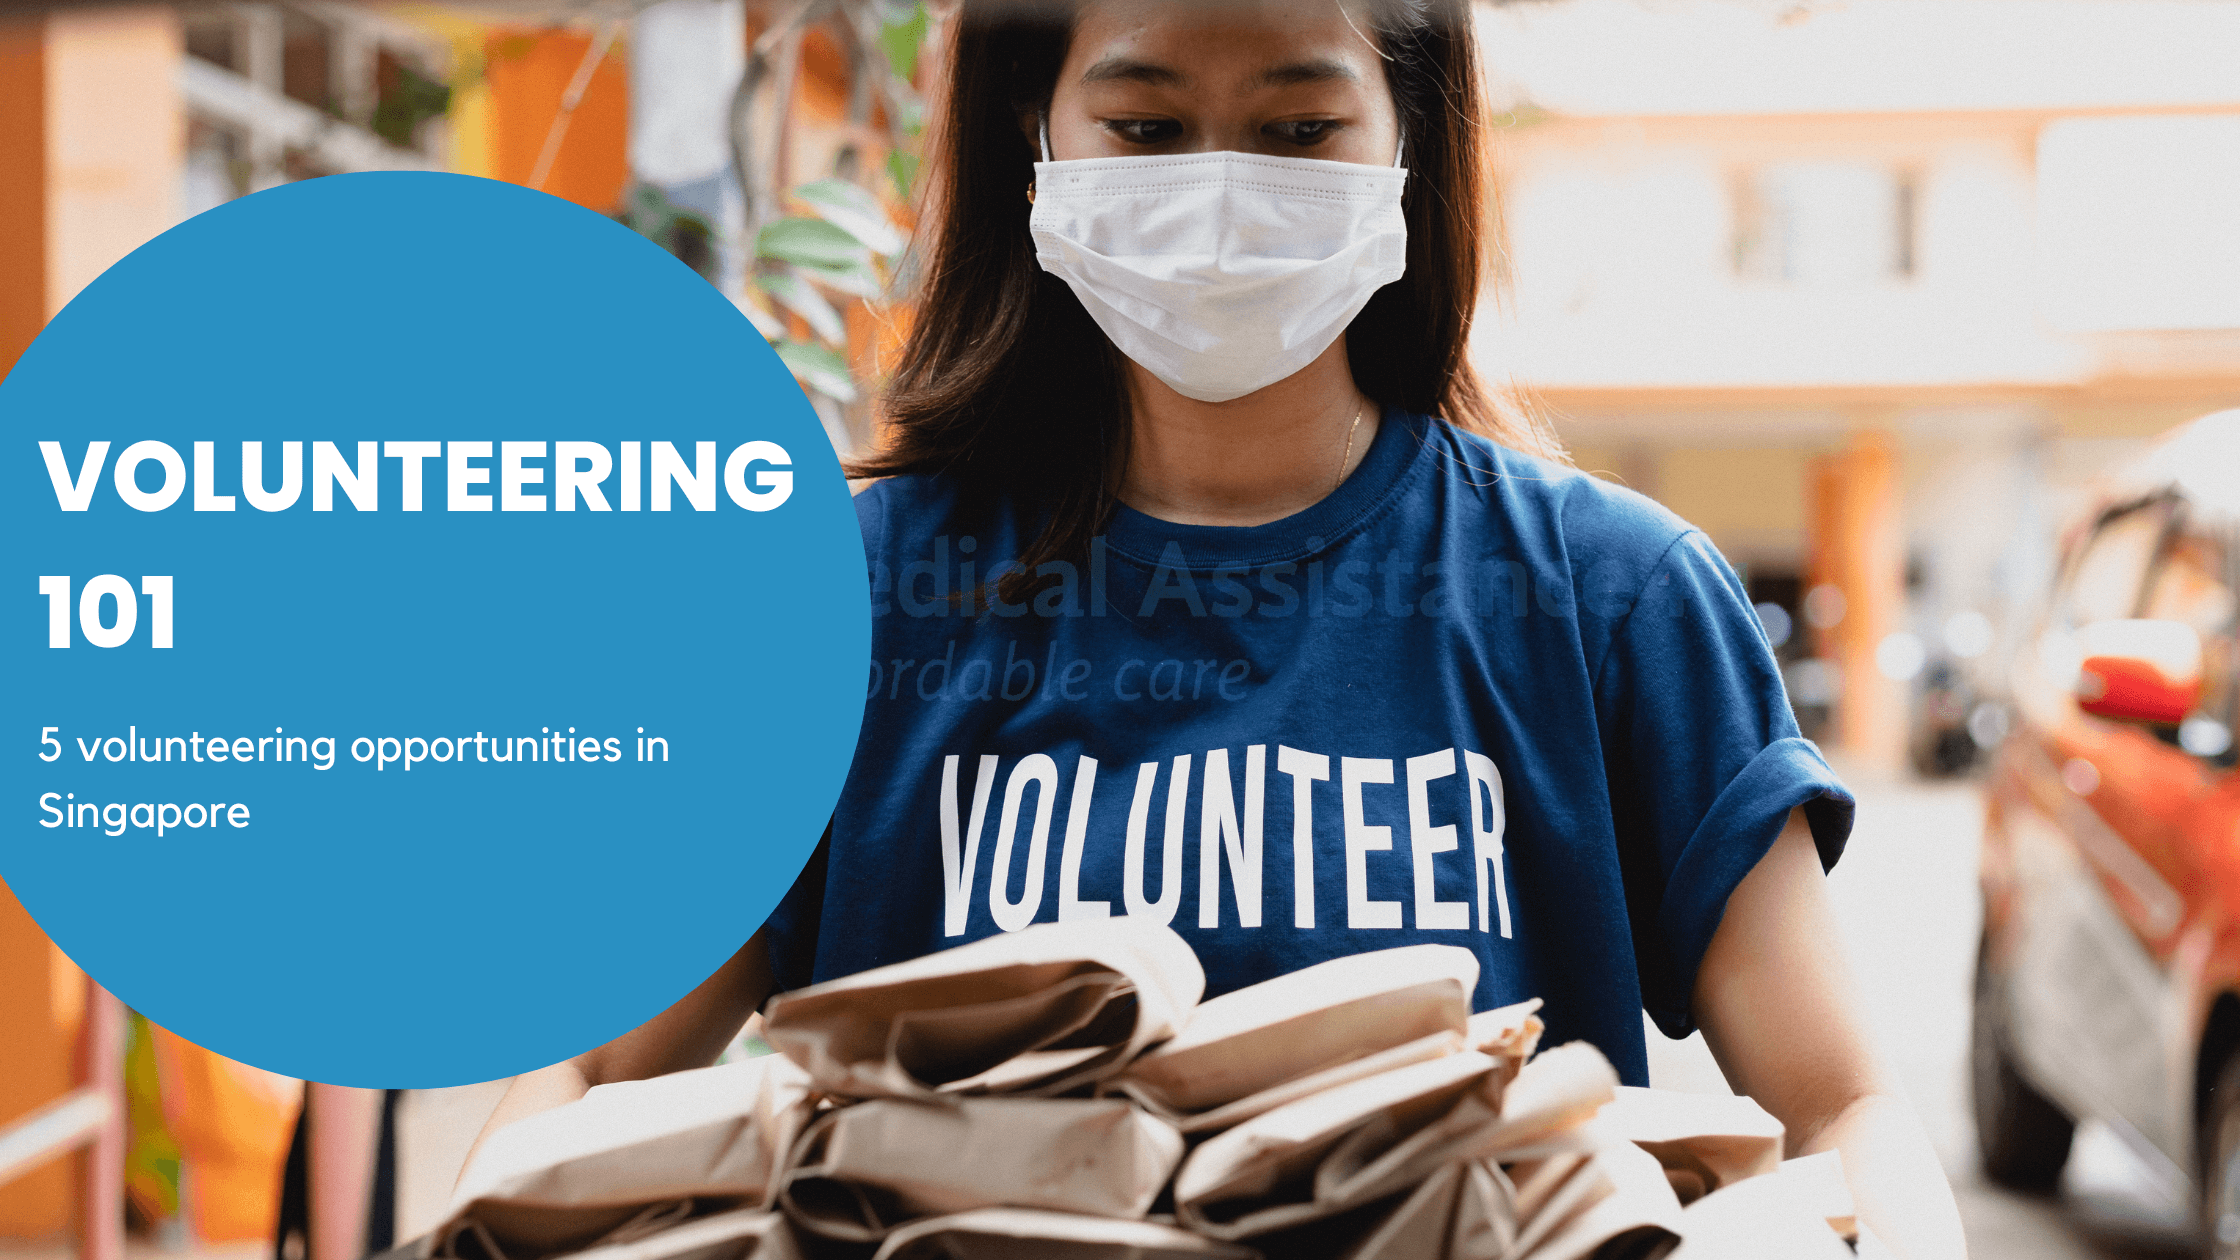 Volunteering 101: Volunteering opportunities in Singapore